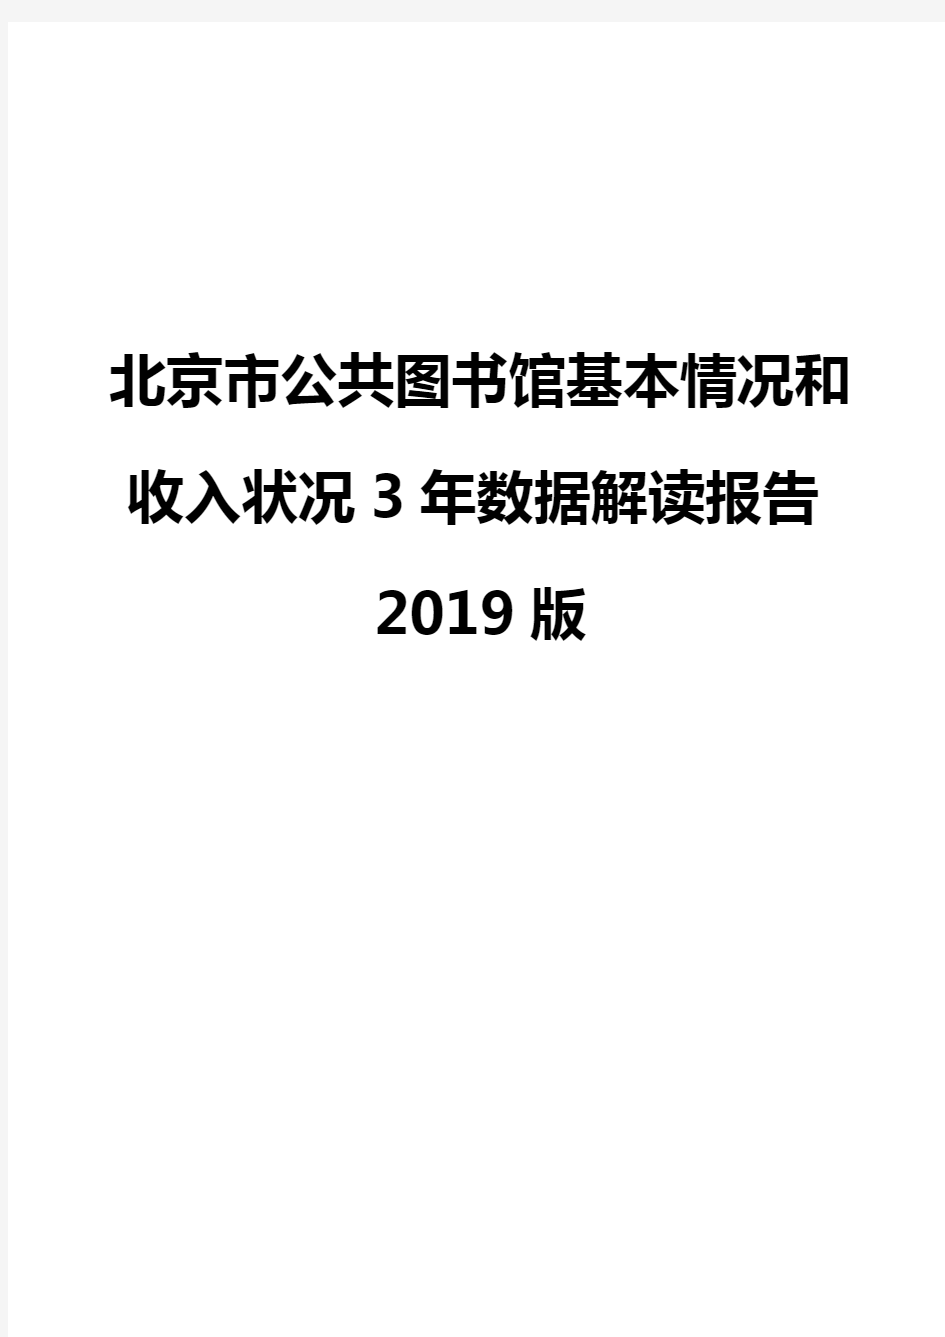 北京市公共图书馆基本情况和收入状况3年数据解读报告2019版